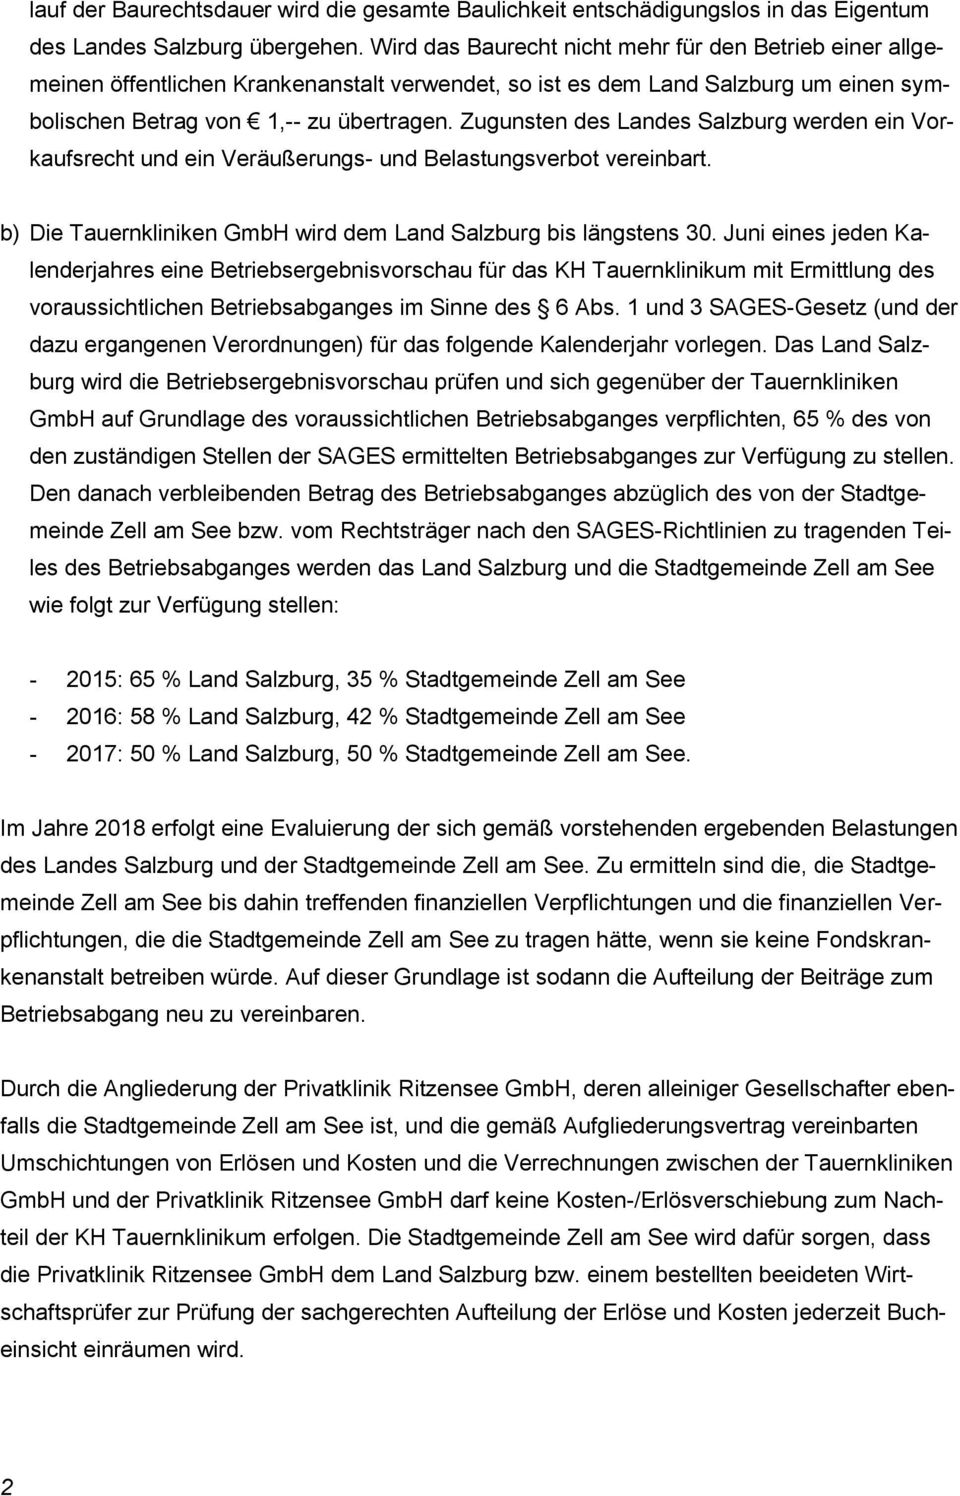 Zugunsten des Landes Salzburg werden ein Vorkaufsrecht und ein Veräußerungs- und Belastungsverbot vereinbart. b) Die Tauernkliniken GmbH wird dem Land Salzburg bis längstens 30.